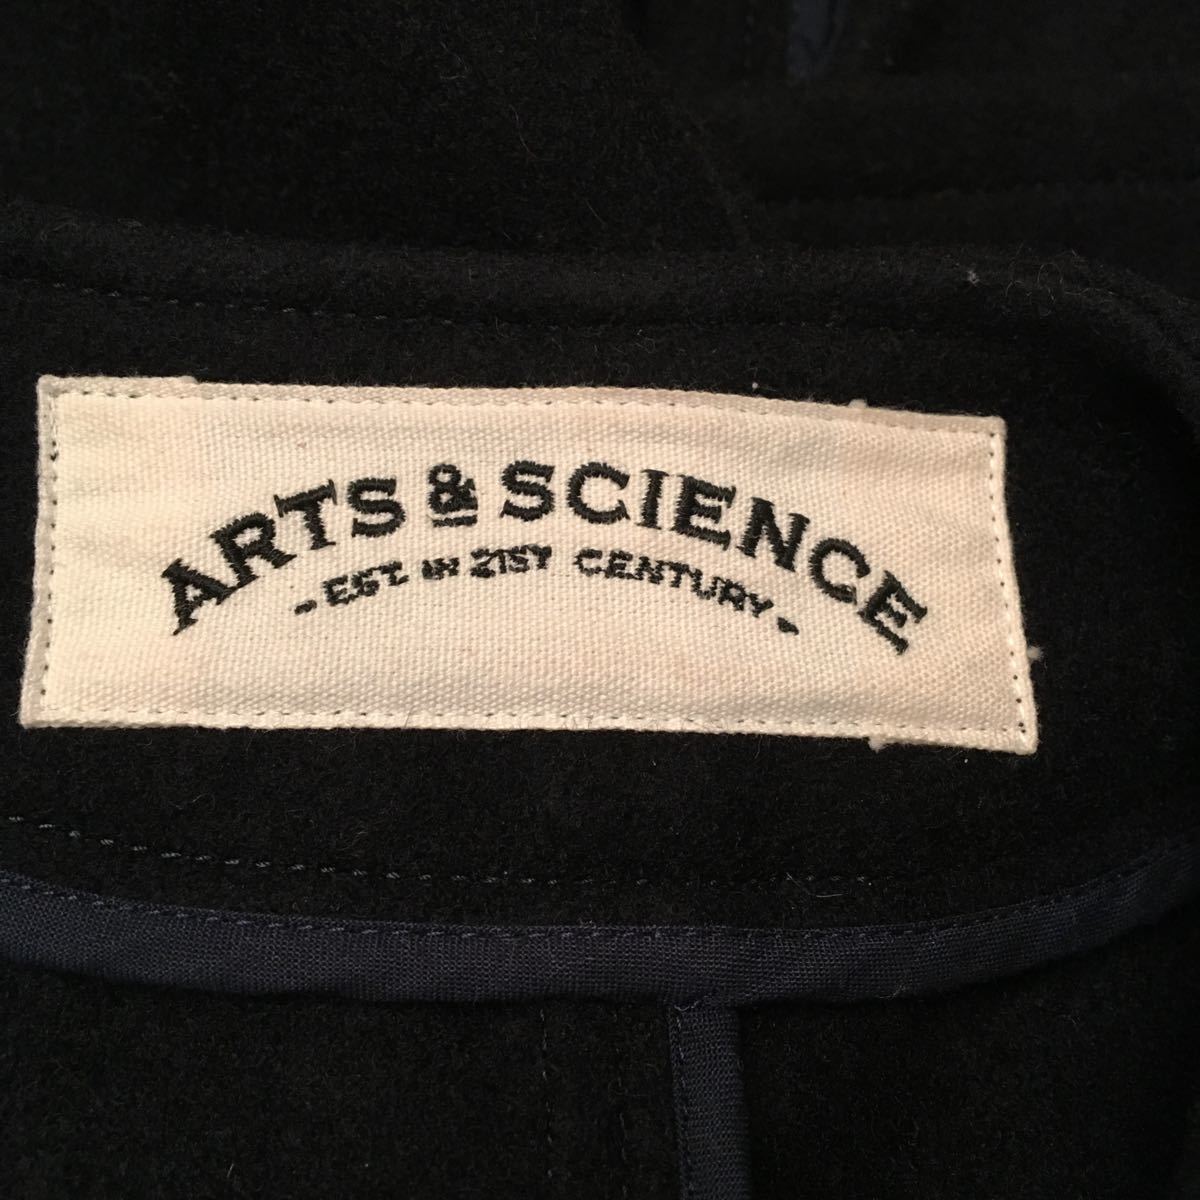 藝術與科學羊毛最佳藝術與科學規模1 原文:arts&science ウール ベスト アーツアンドサイエンス サイズ1